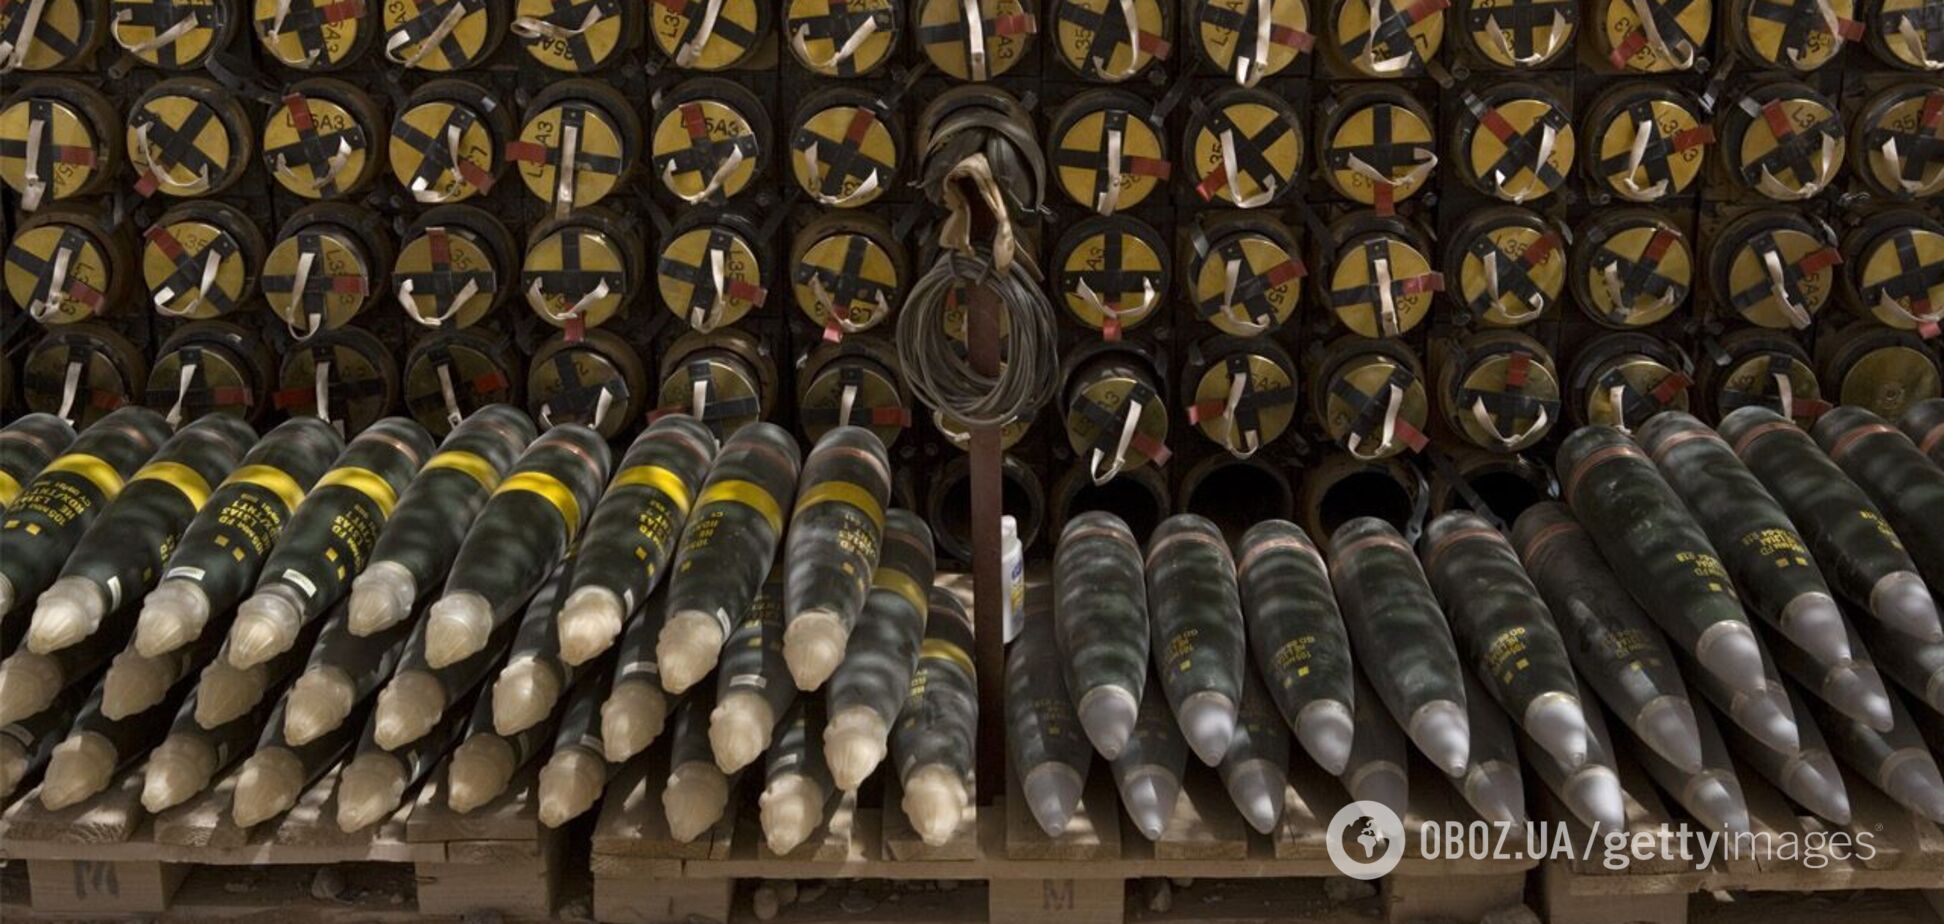 Большинство вооружений из пакета США уже в Европе: СМИ указали на важный нюанс в помощи Украине